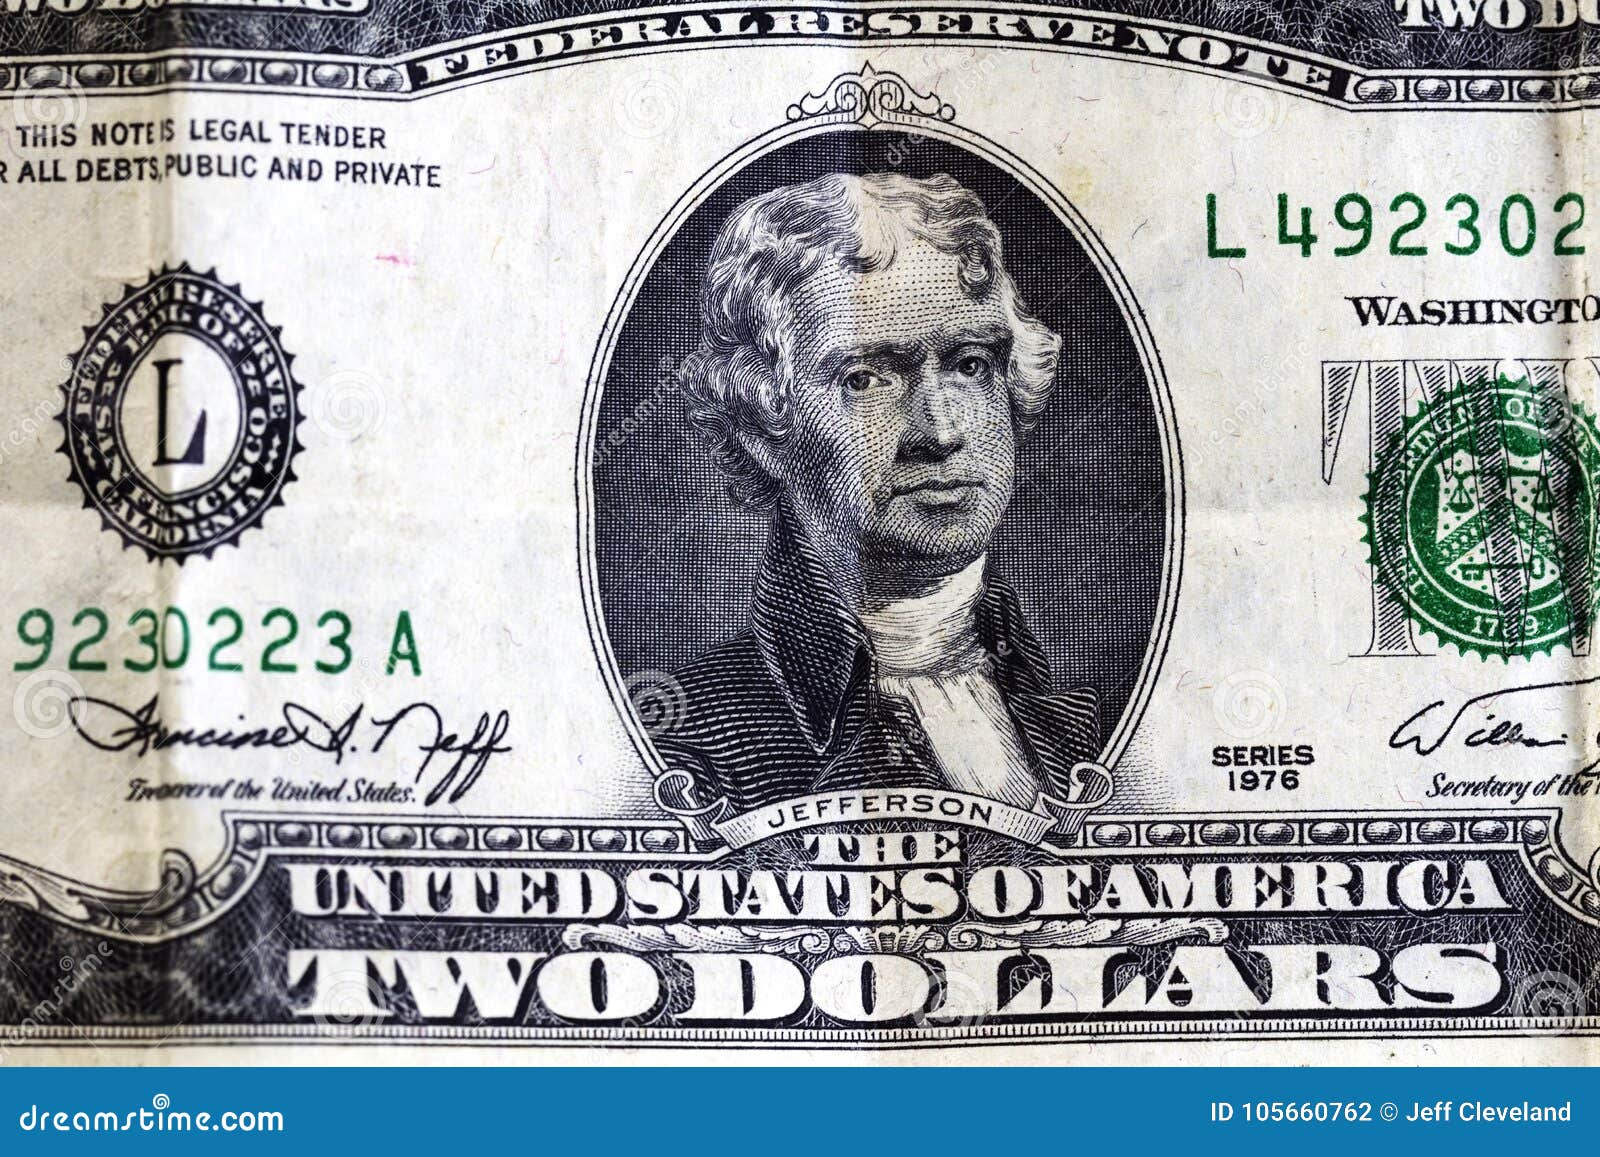 Джефферсон купюра. Линкольн изображение на купюре. Американский доллар что изображено на купюре.